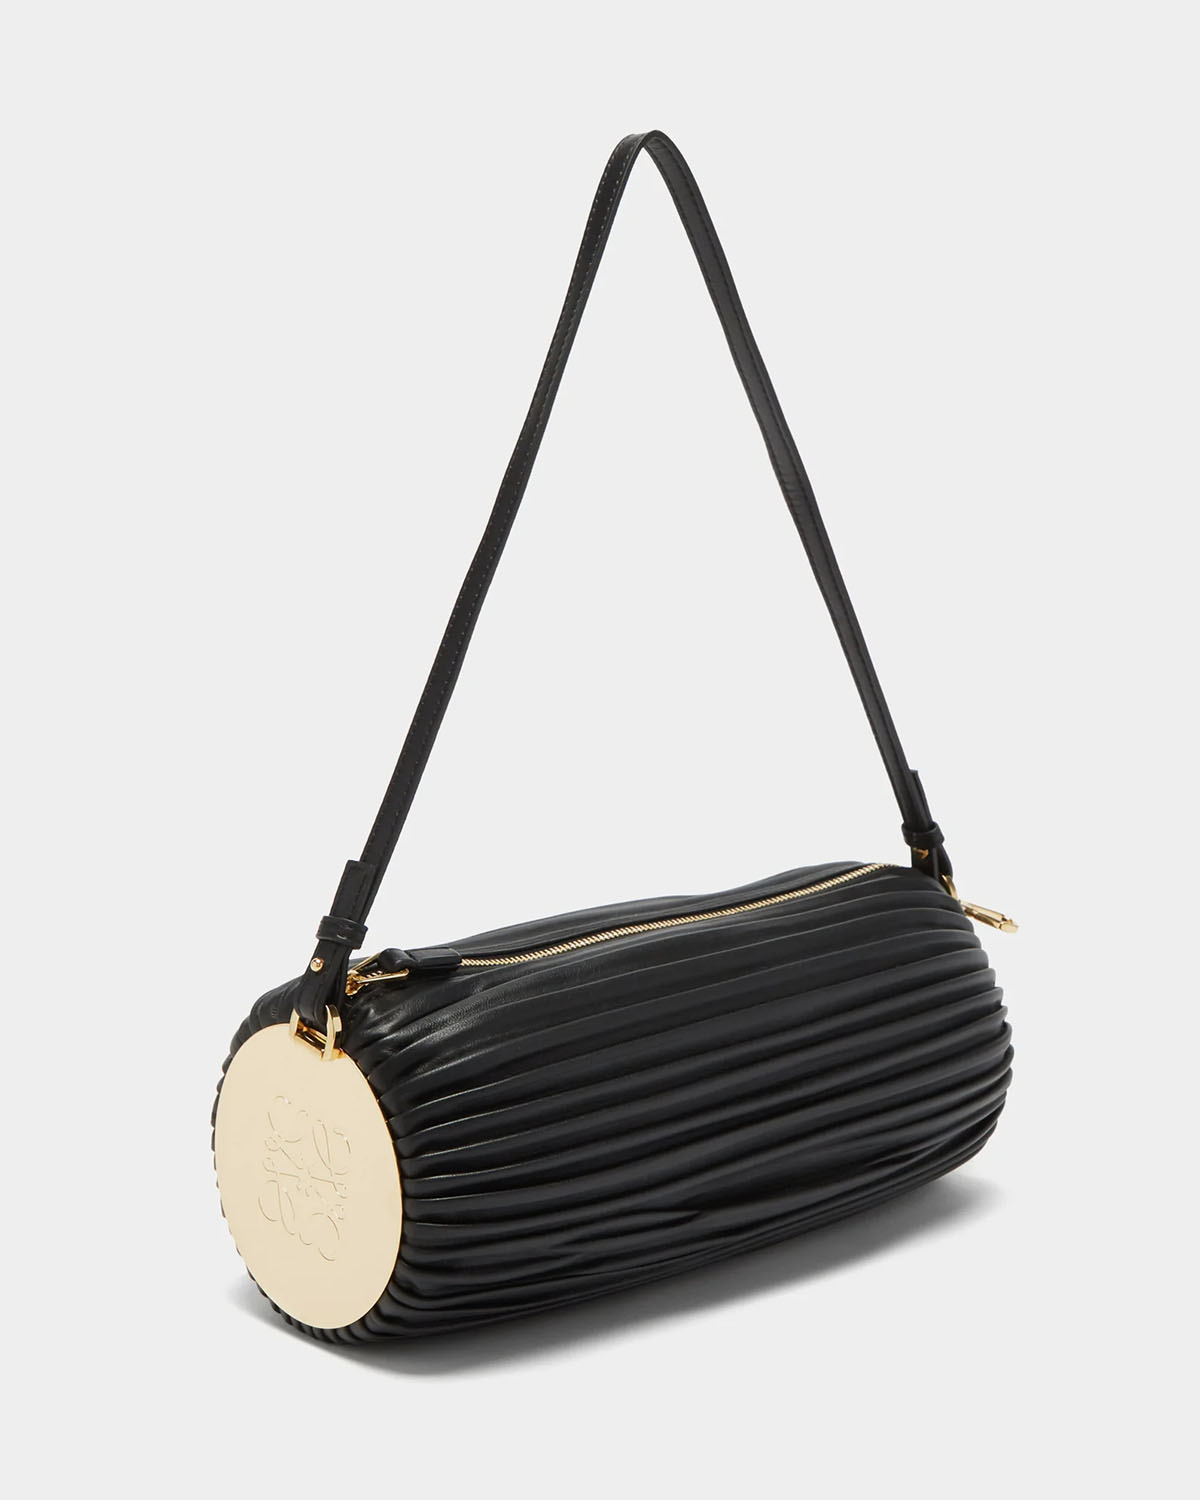 Chloe Nile Bracelet Bag in Smooth & Suede Calfskin $$1,690 Half moon | eBay